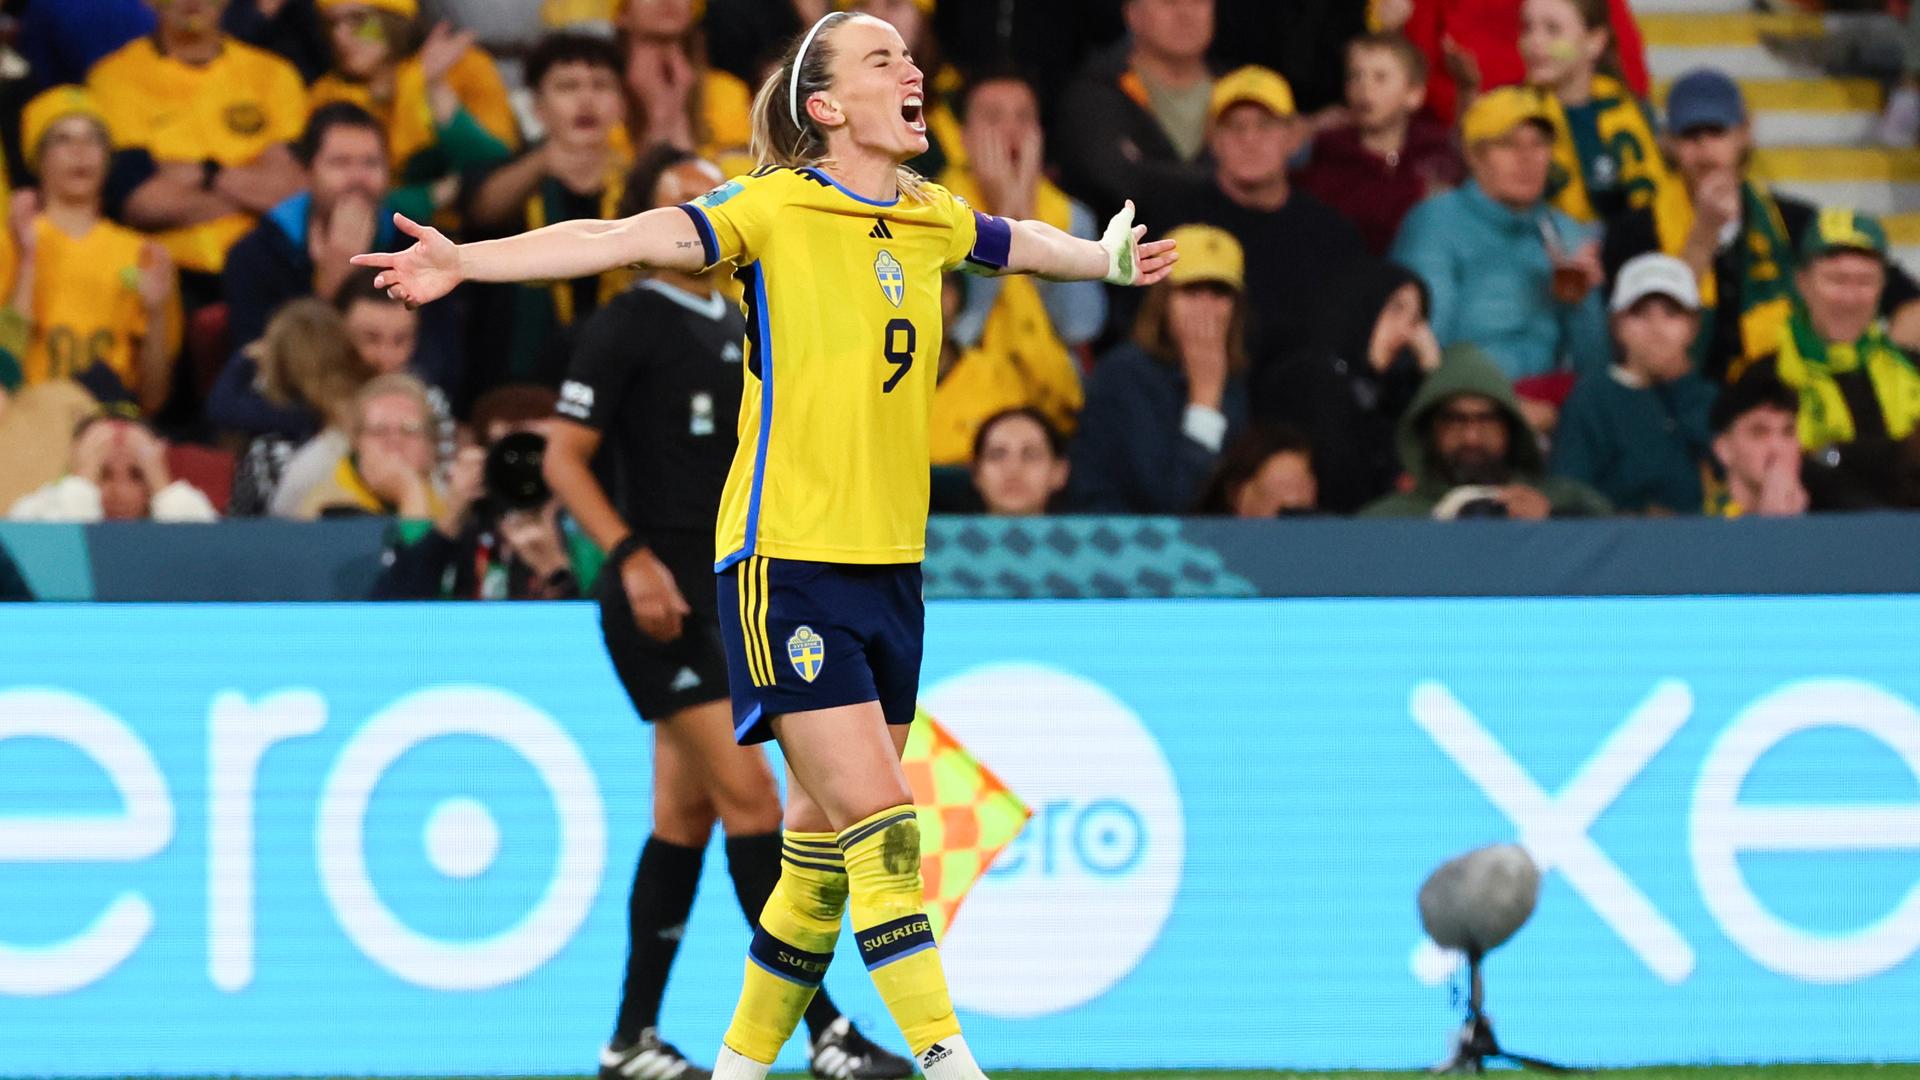 Eine schwedische Spielerin breitet ihre Arme nach einem Treffer zum Jubel aus.